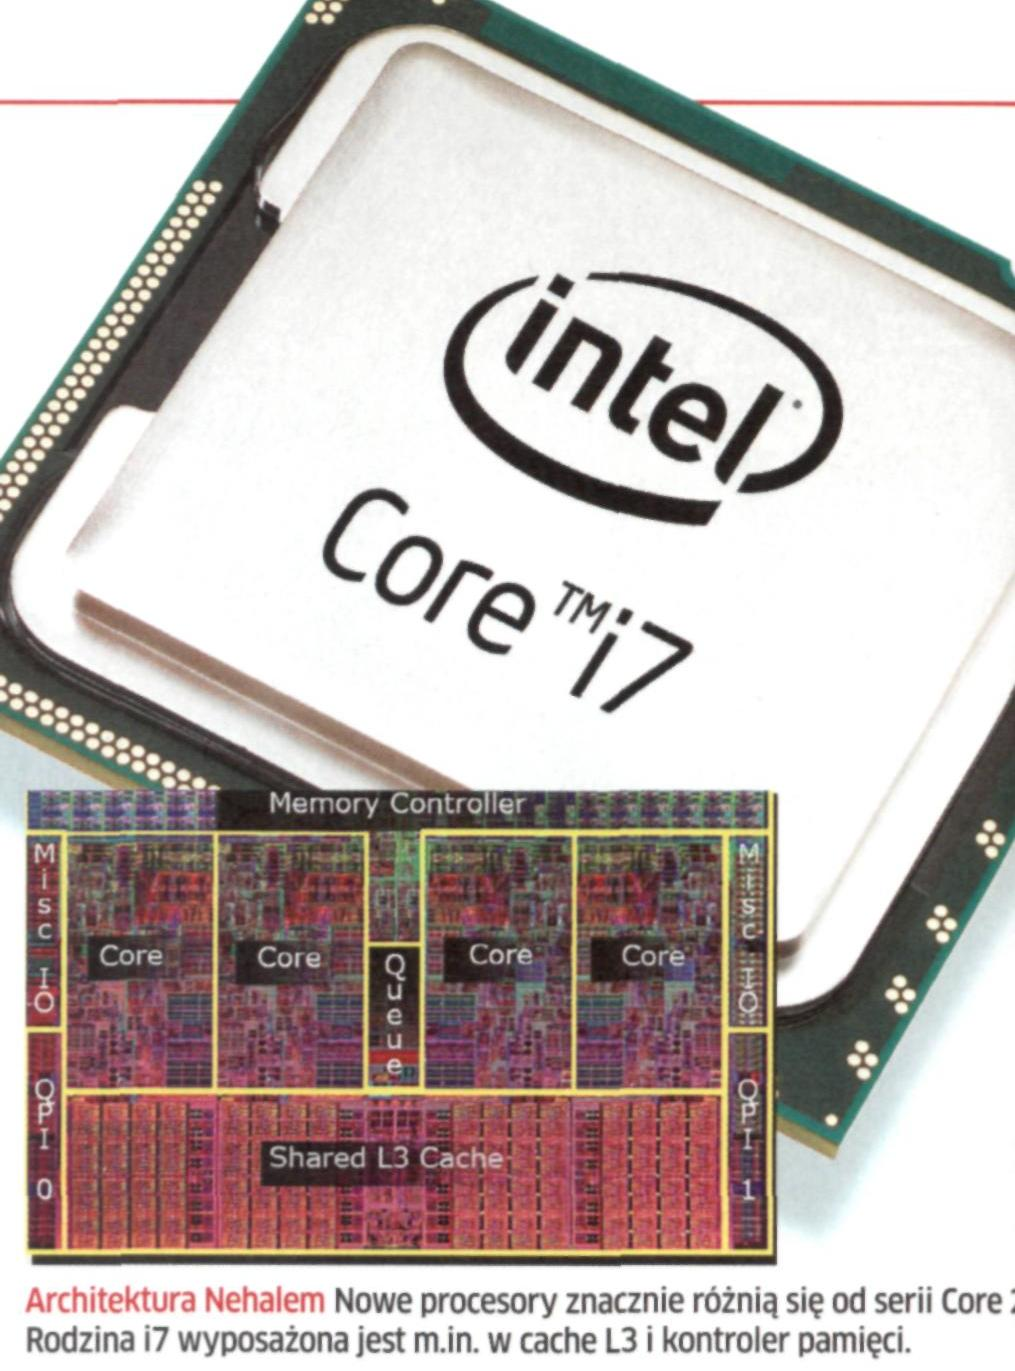 Core i7 4 rdzenie i więcej Core i7 jest pierwszym procesorem wykorzystującym mikroarchitekturę Nehalem, będącą następczynią Core.